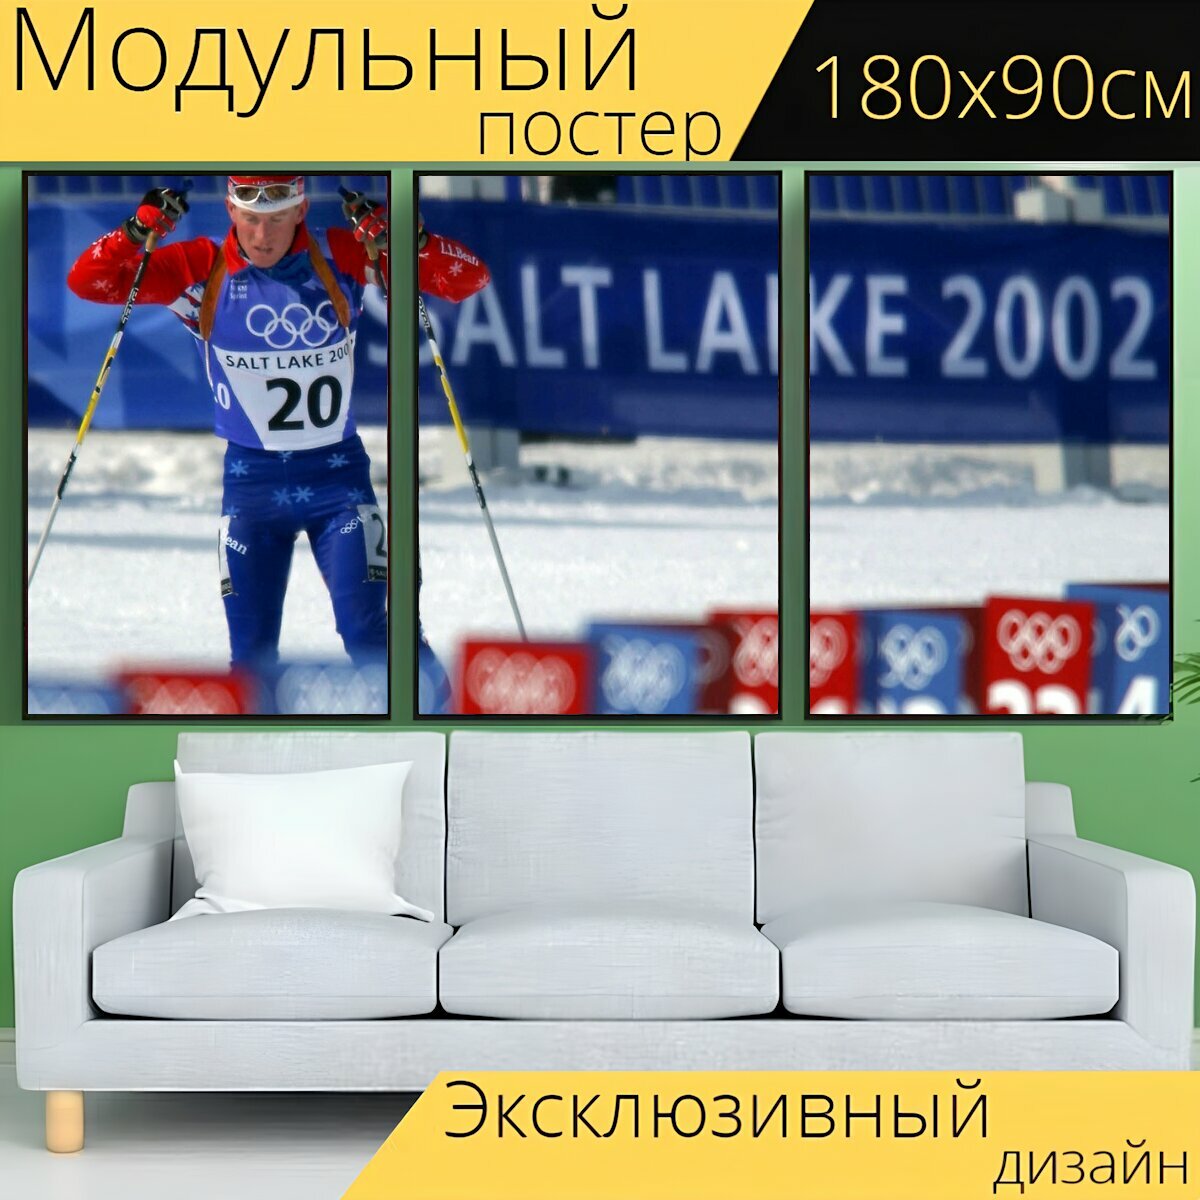 Модульный постер "Биатлон, спортсмен, олимпиада" 180 x 90 см. для интерьера